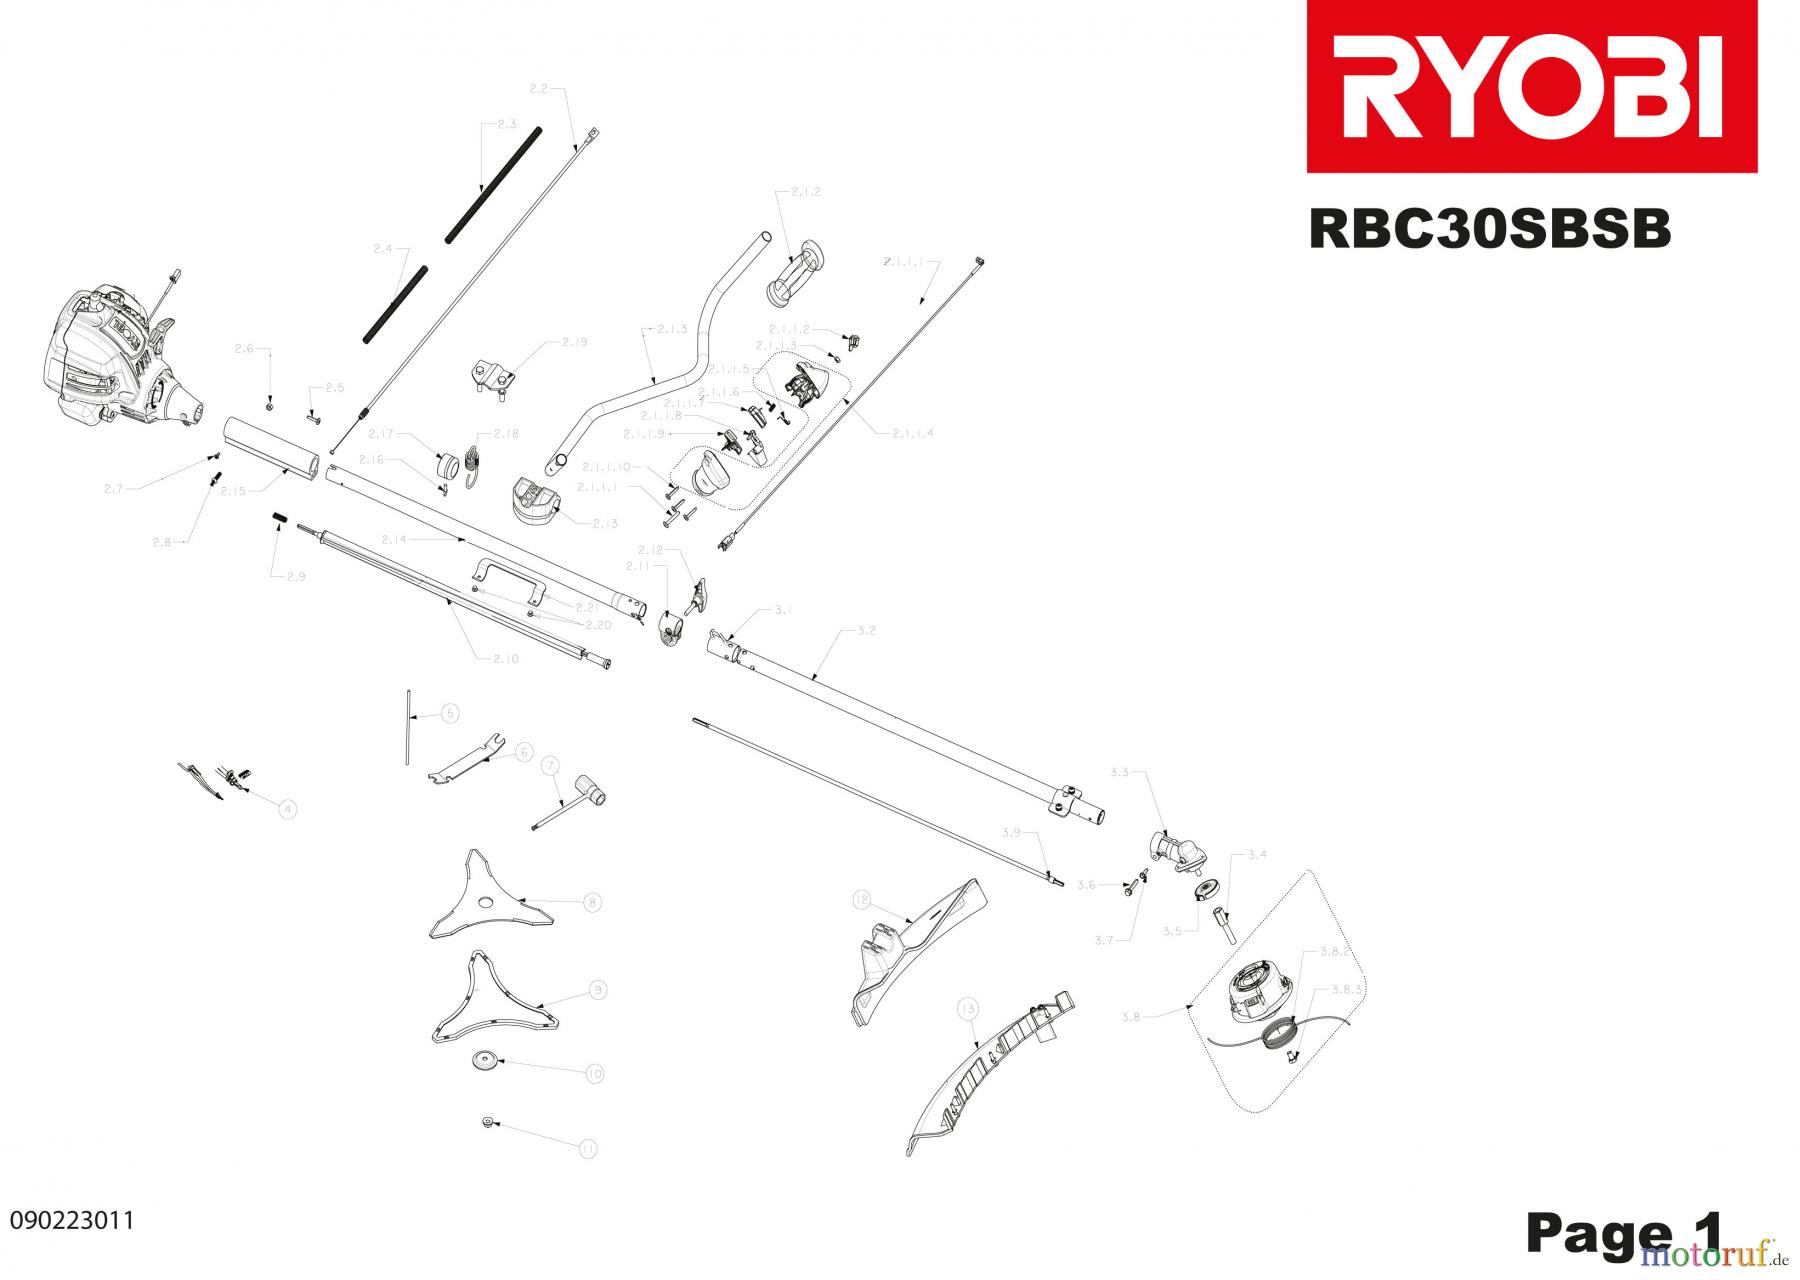  Ryobi Sensen Freischneider Benzin RBC30SBSB Seite 1